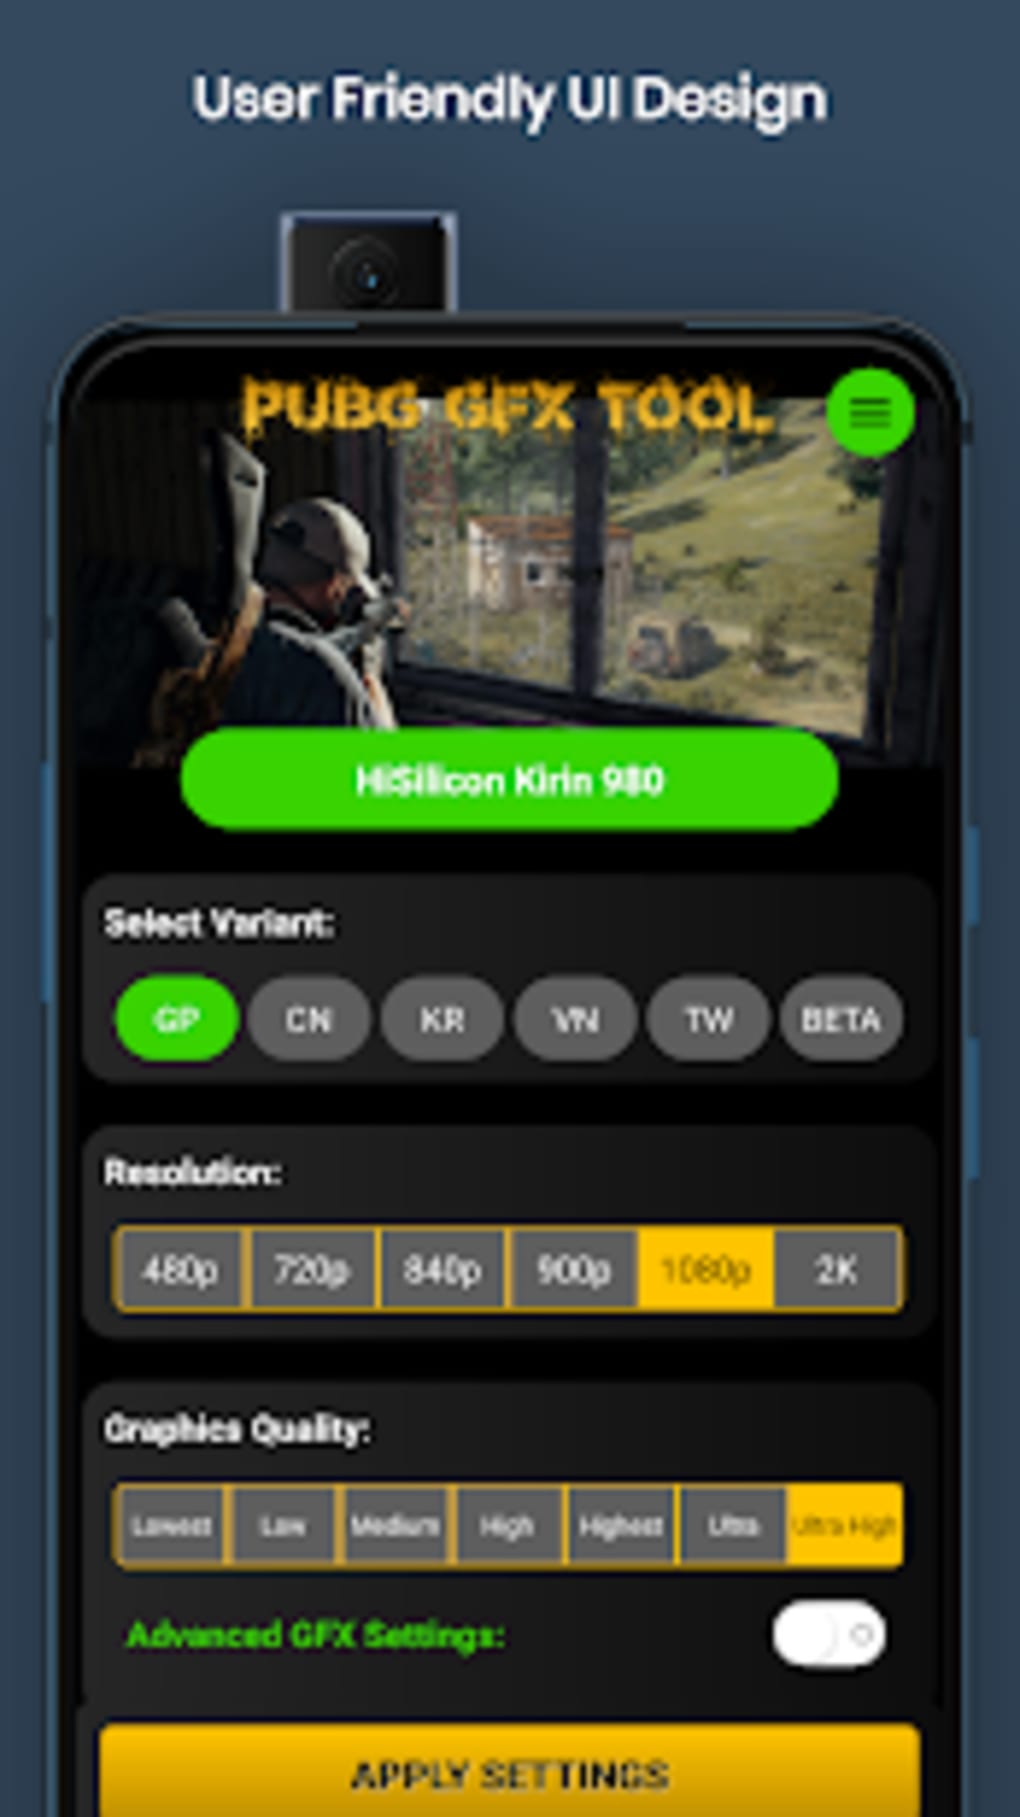 Gfx tool скачать на андроид бесплатно русском для pubg mobile фото 16